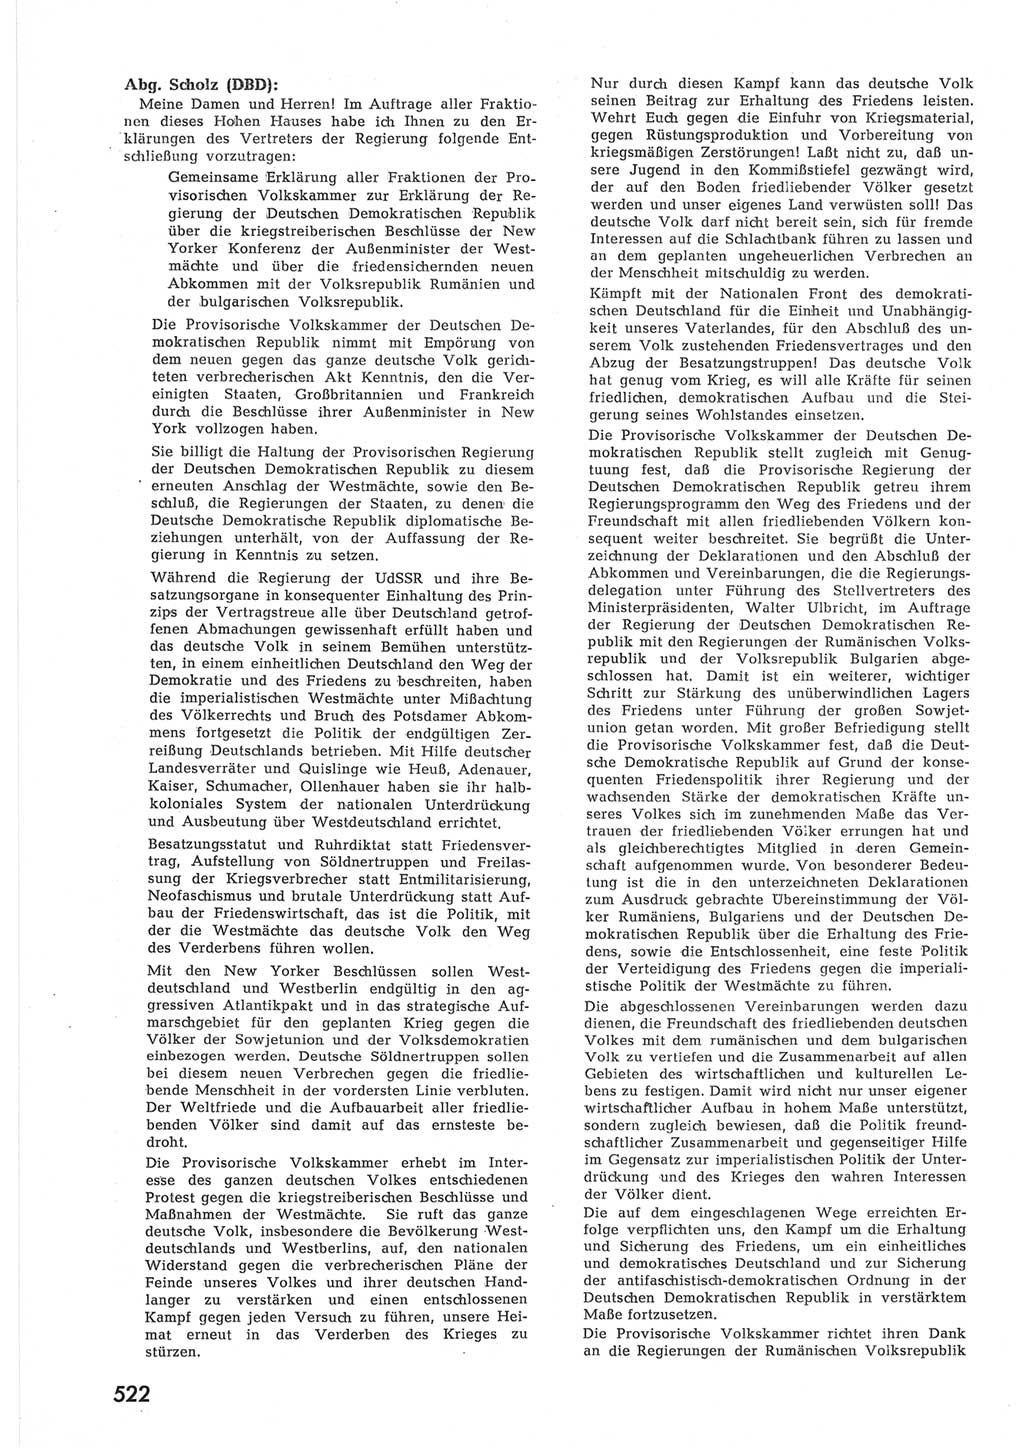 Provisorische Volkskammer (VK) der Deutschen Demokratischen Republik (DDR) 1949-1950, Dokument 540 (Prov. VK DDR 1949-1950, Dok. 540)